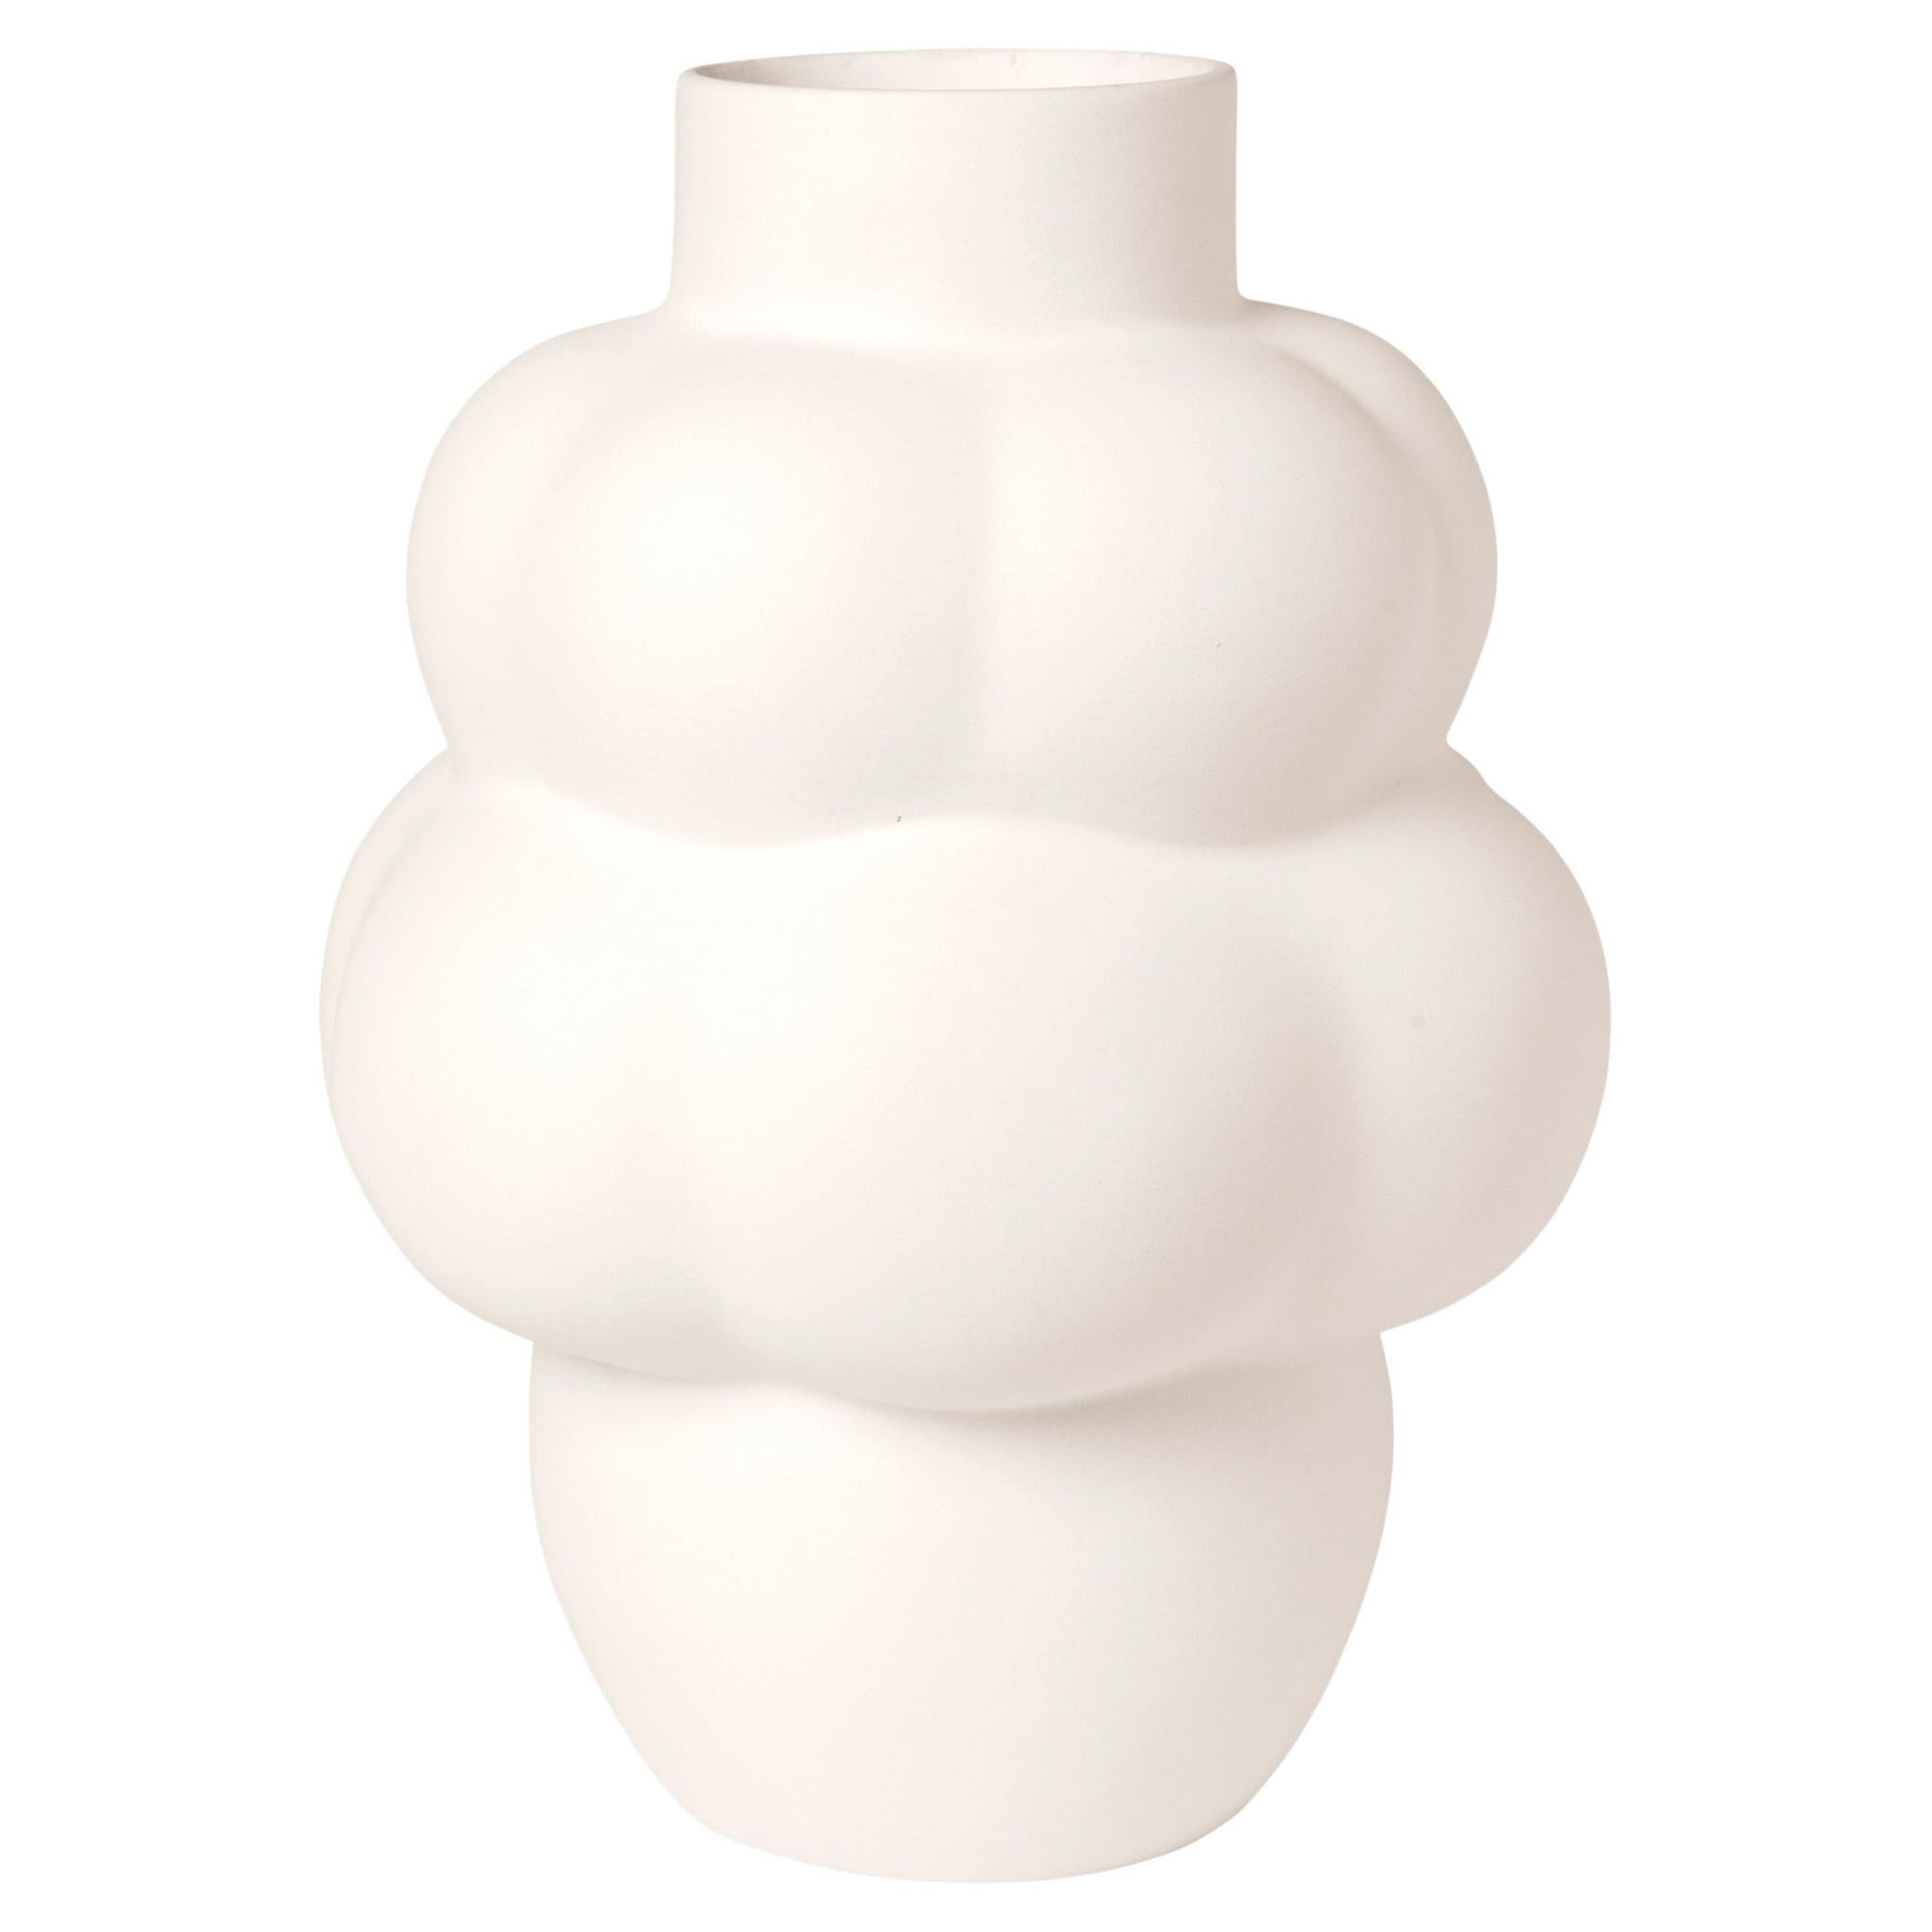 Vase Balloon contemporain 04 blanc brut de Louise Roe